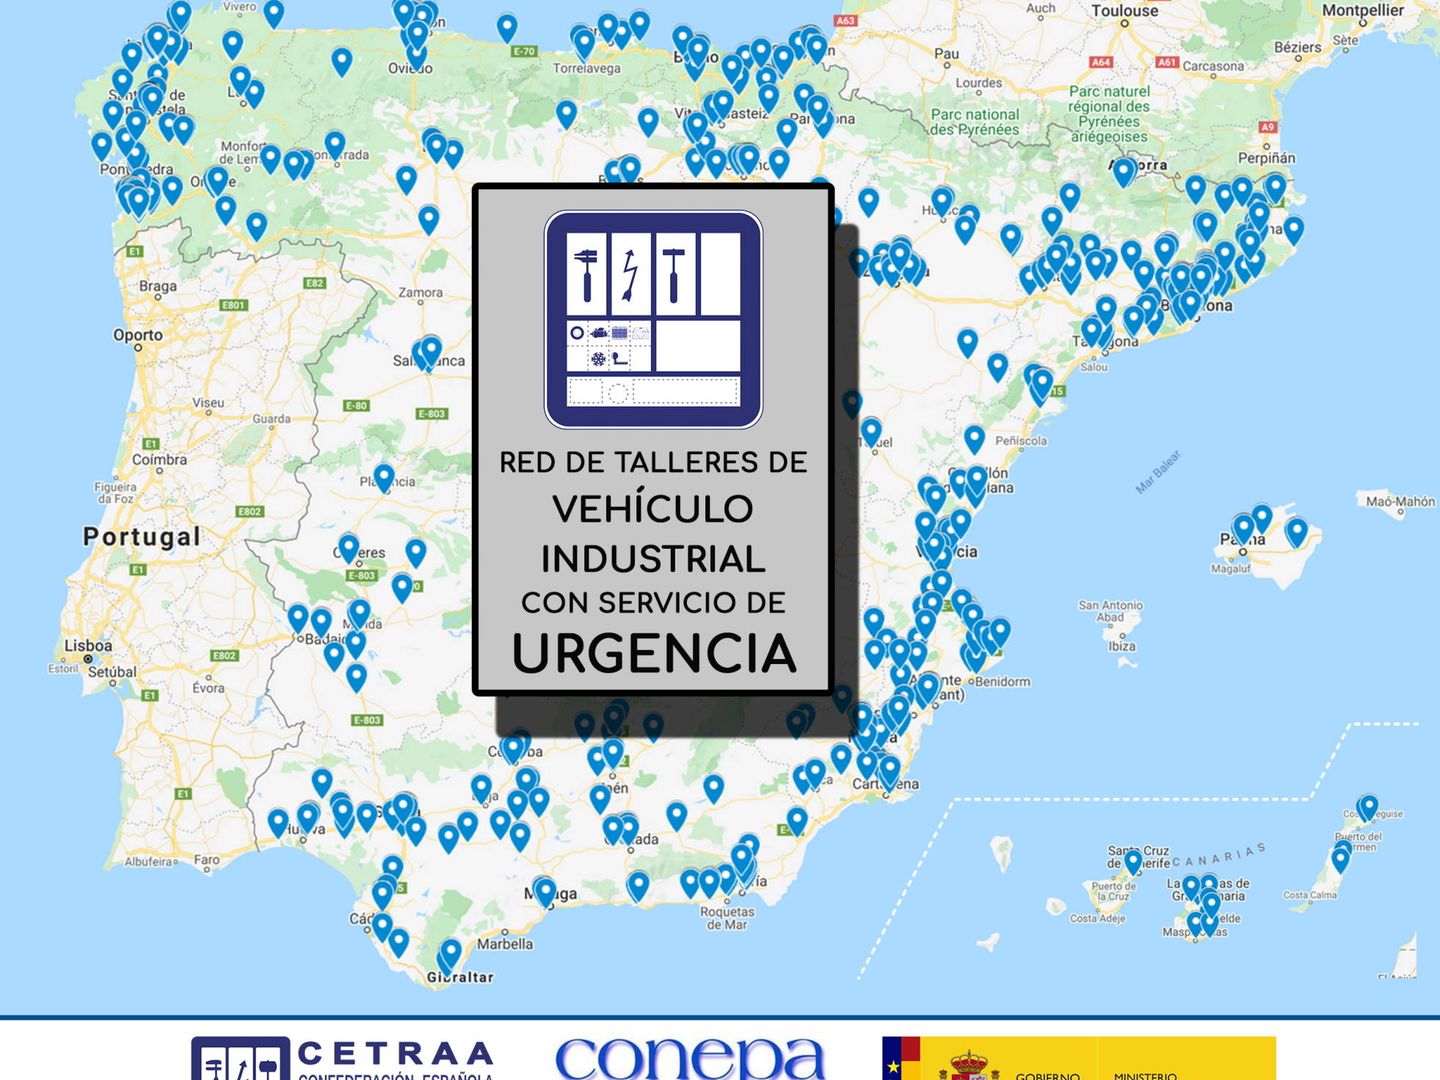 Esta es una imagen del mapa interactivo en el que se muestran los 800 talleres en servicio de urgencia solo para transportistas.